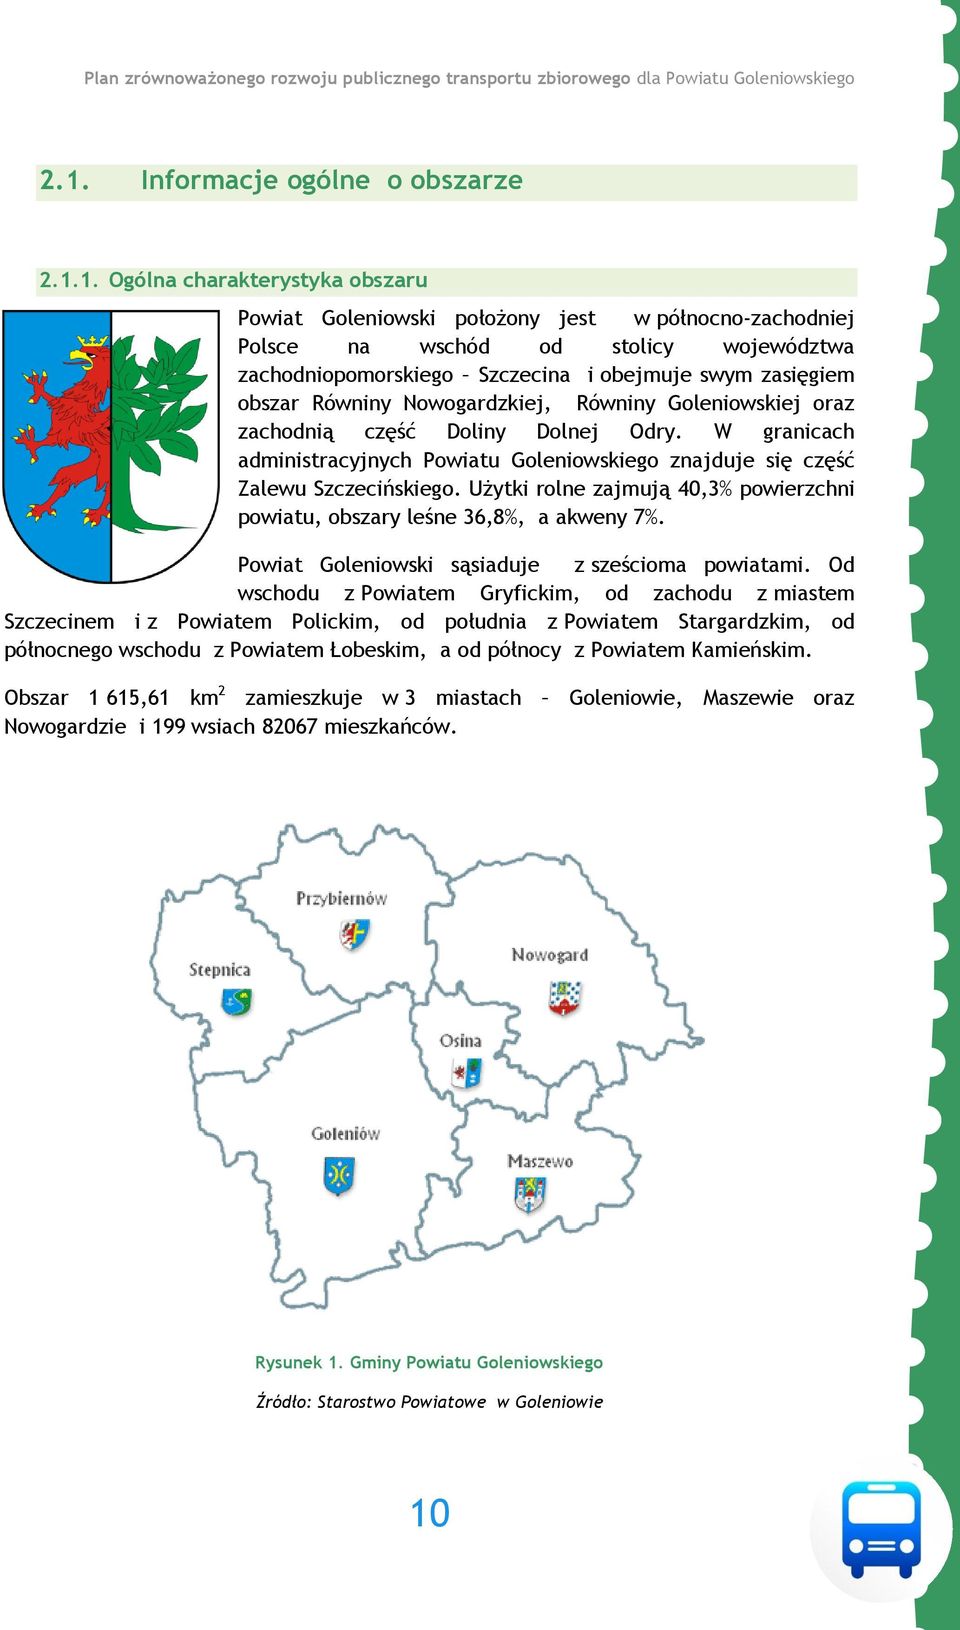 W granicach administracyjnych Powiatu Goleniowskiego znajduje się część Zalewu Szczecińskiego. Użytki rolne zajmują 40,3% powierzchni powiatu, obszary leśne 36,8%, a akweny 7%.